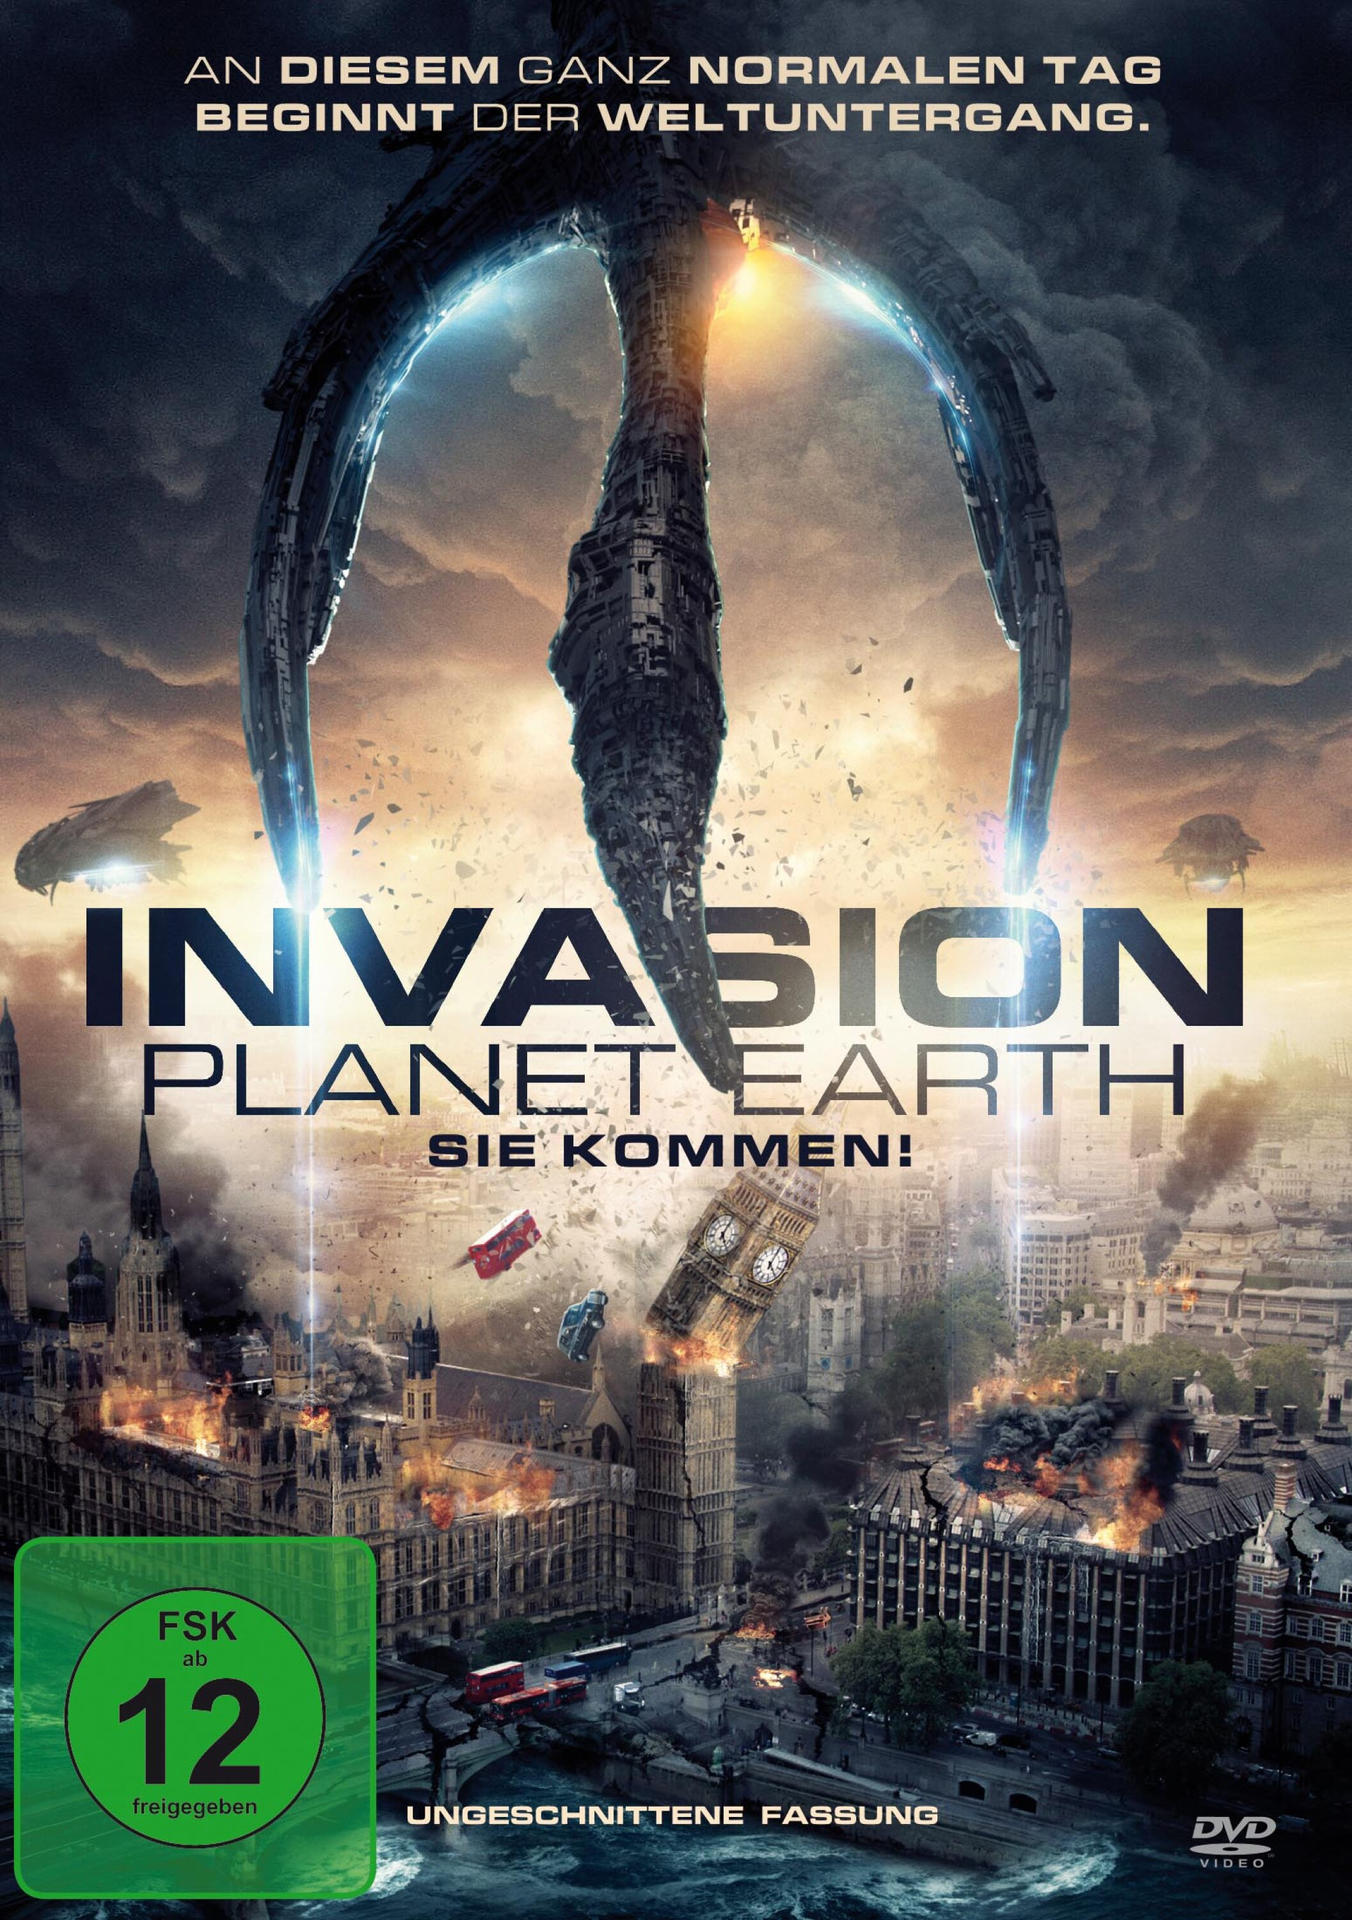 kommen! Planet Earth-Sie Invasion DVD